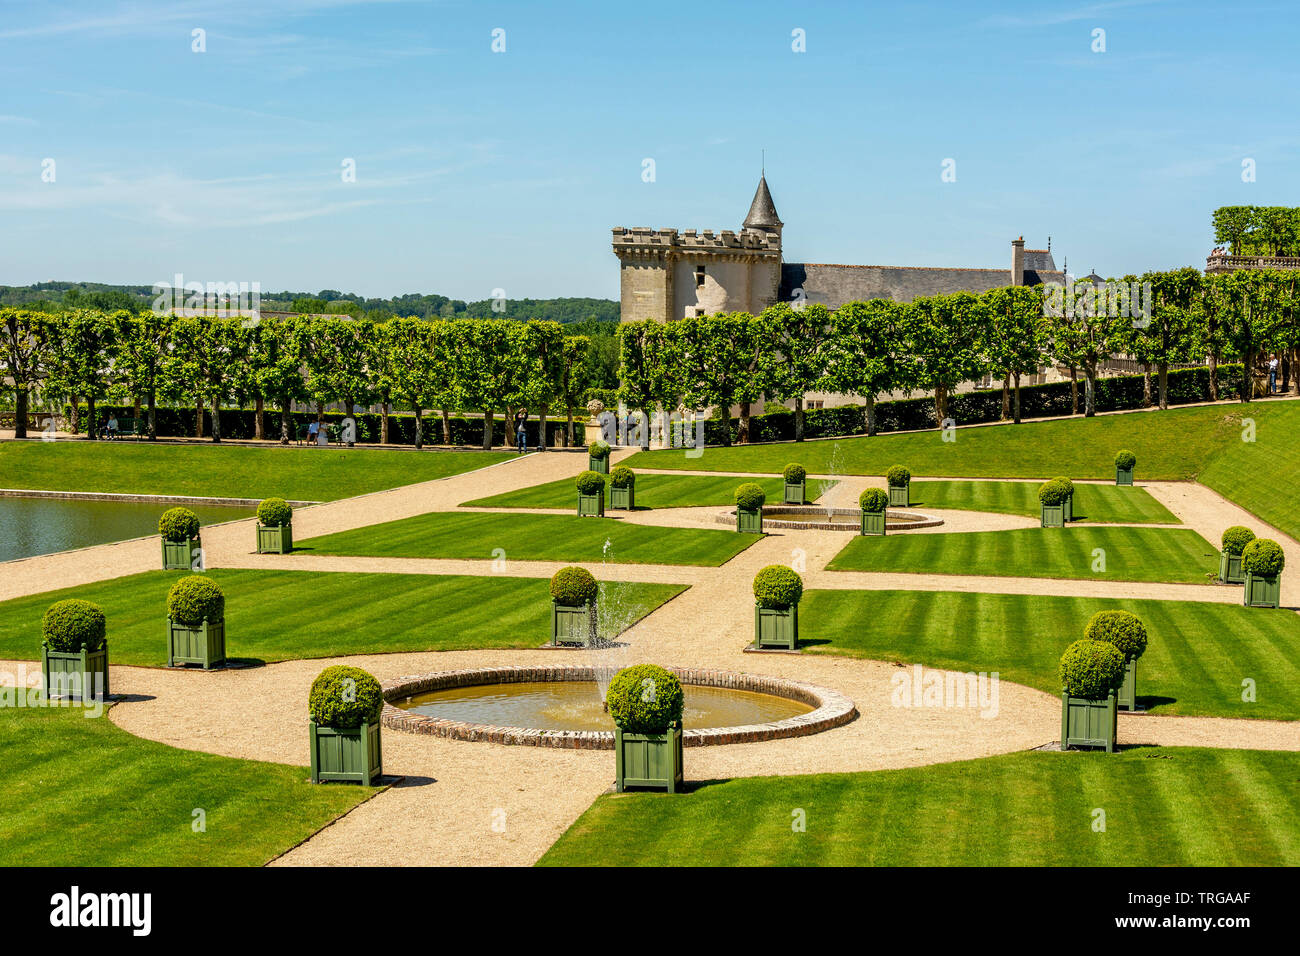 Chateau de Villandry and its gardens, Indre-et-Loire department, Centre-Val de Loire, France Stock Photo